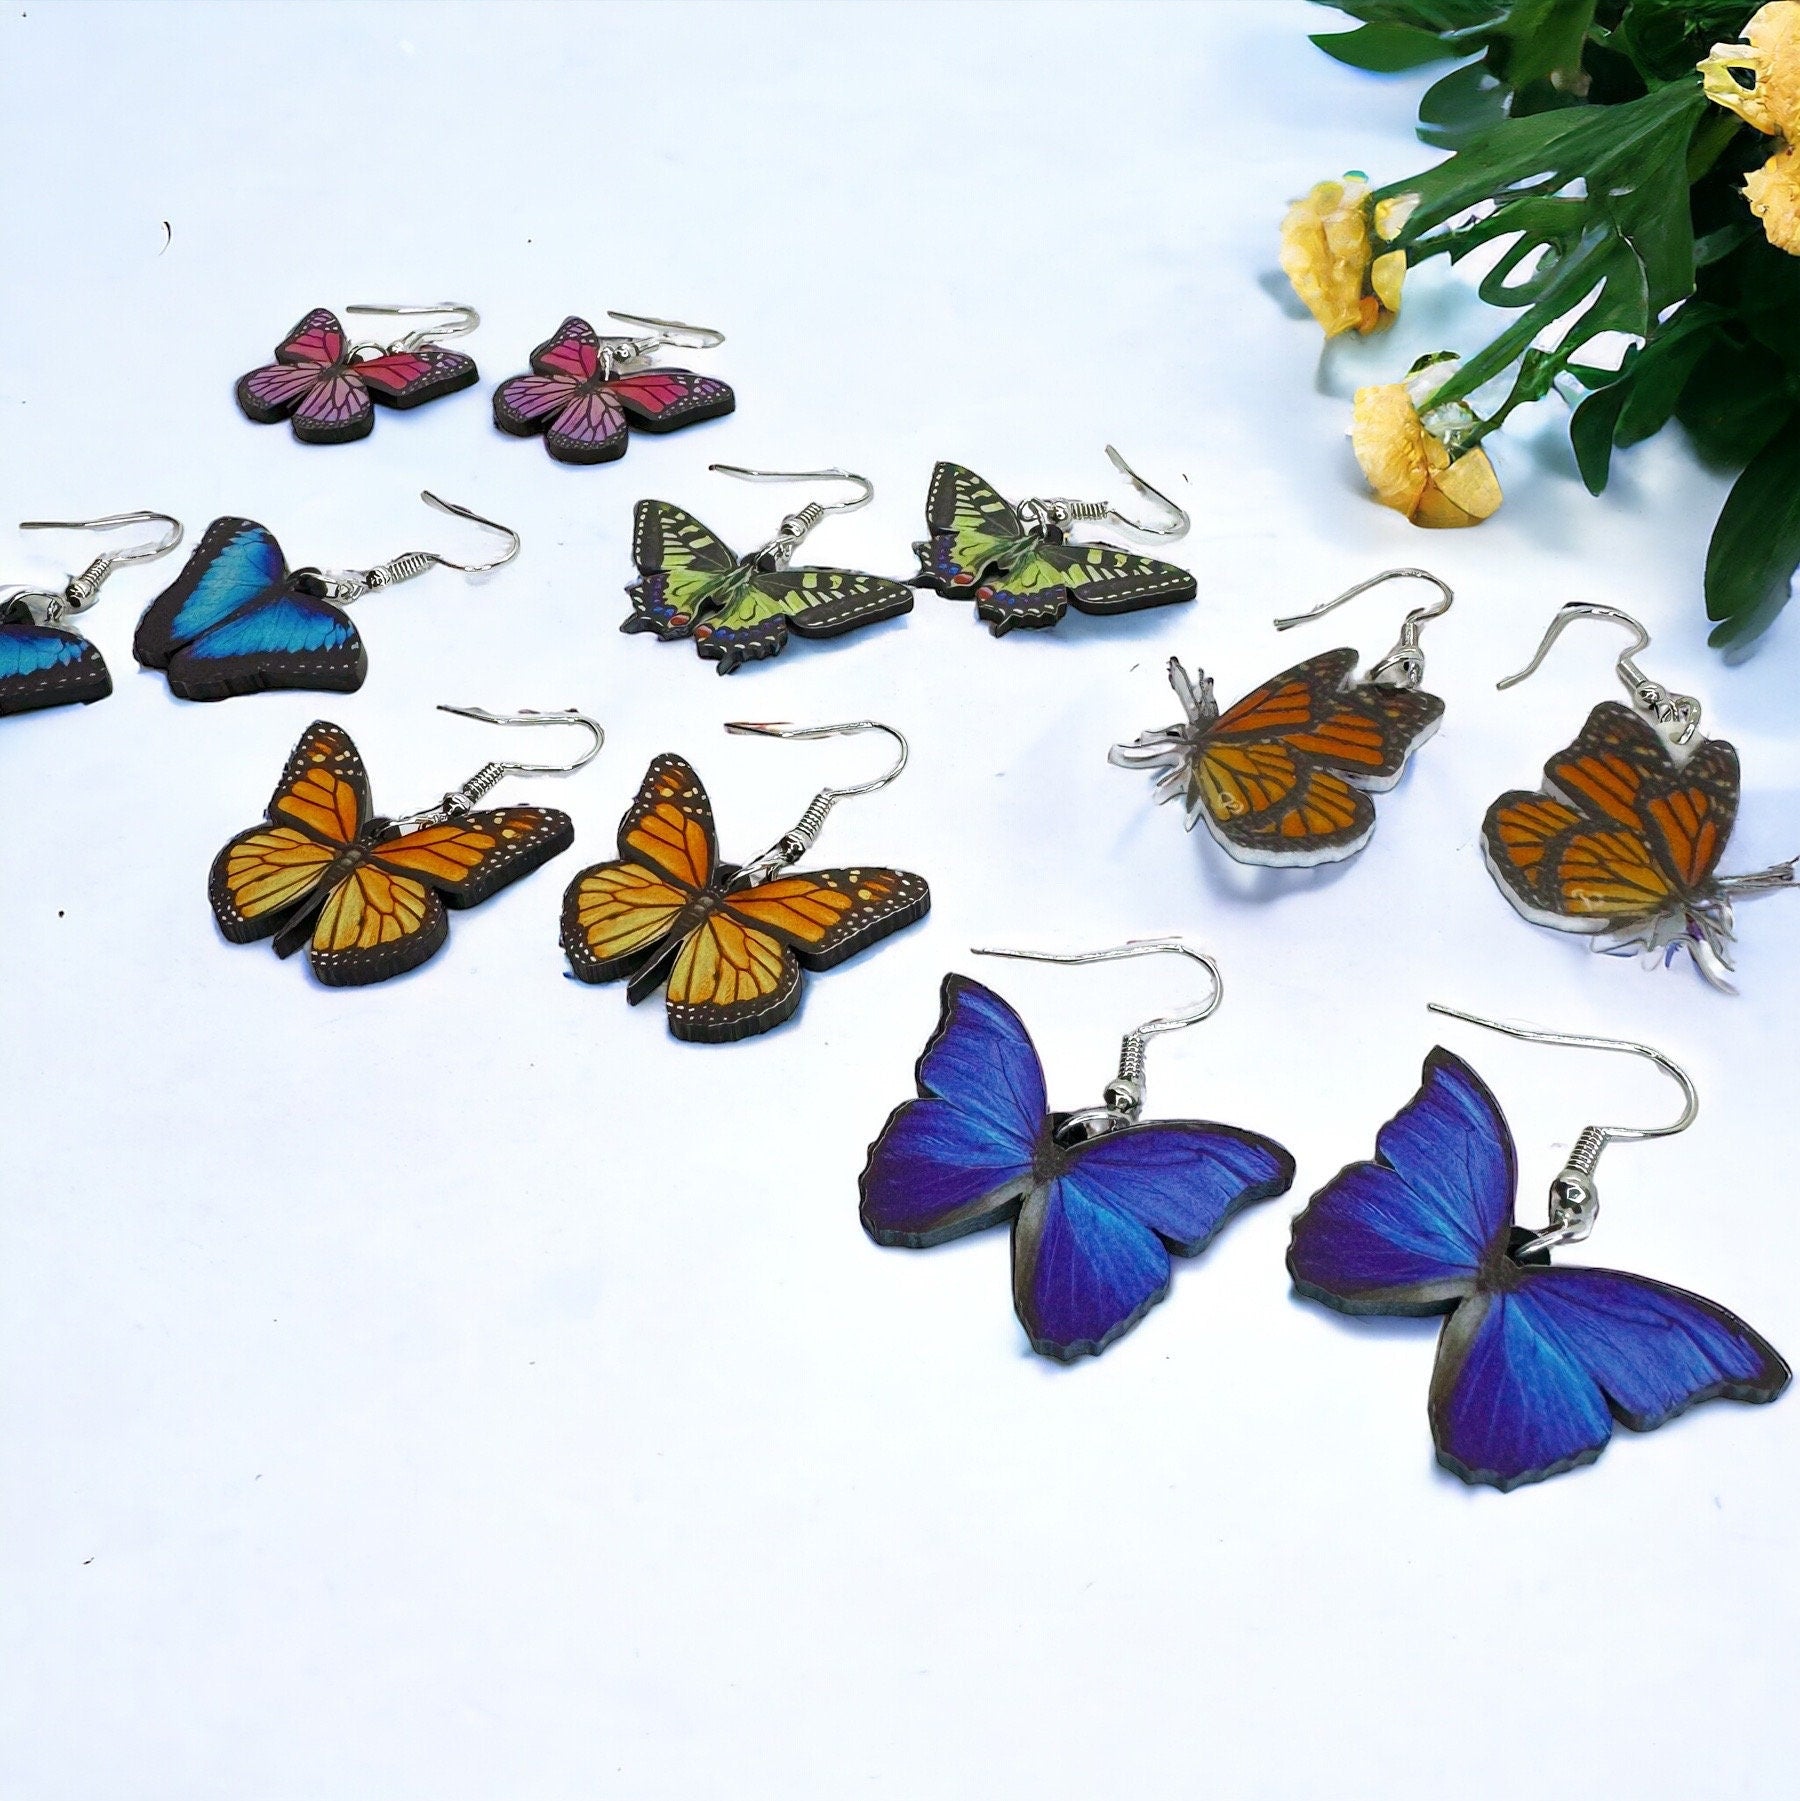 Butterfly Earrings - Easter Earrings, Handmade Earrings, Butterfly Jewelry, Butterfly Accessories, Easter Accessories, Monarch Butterfly